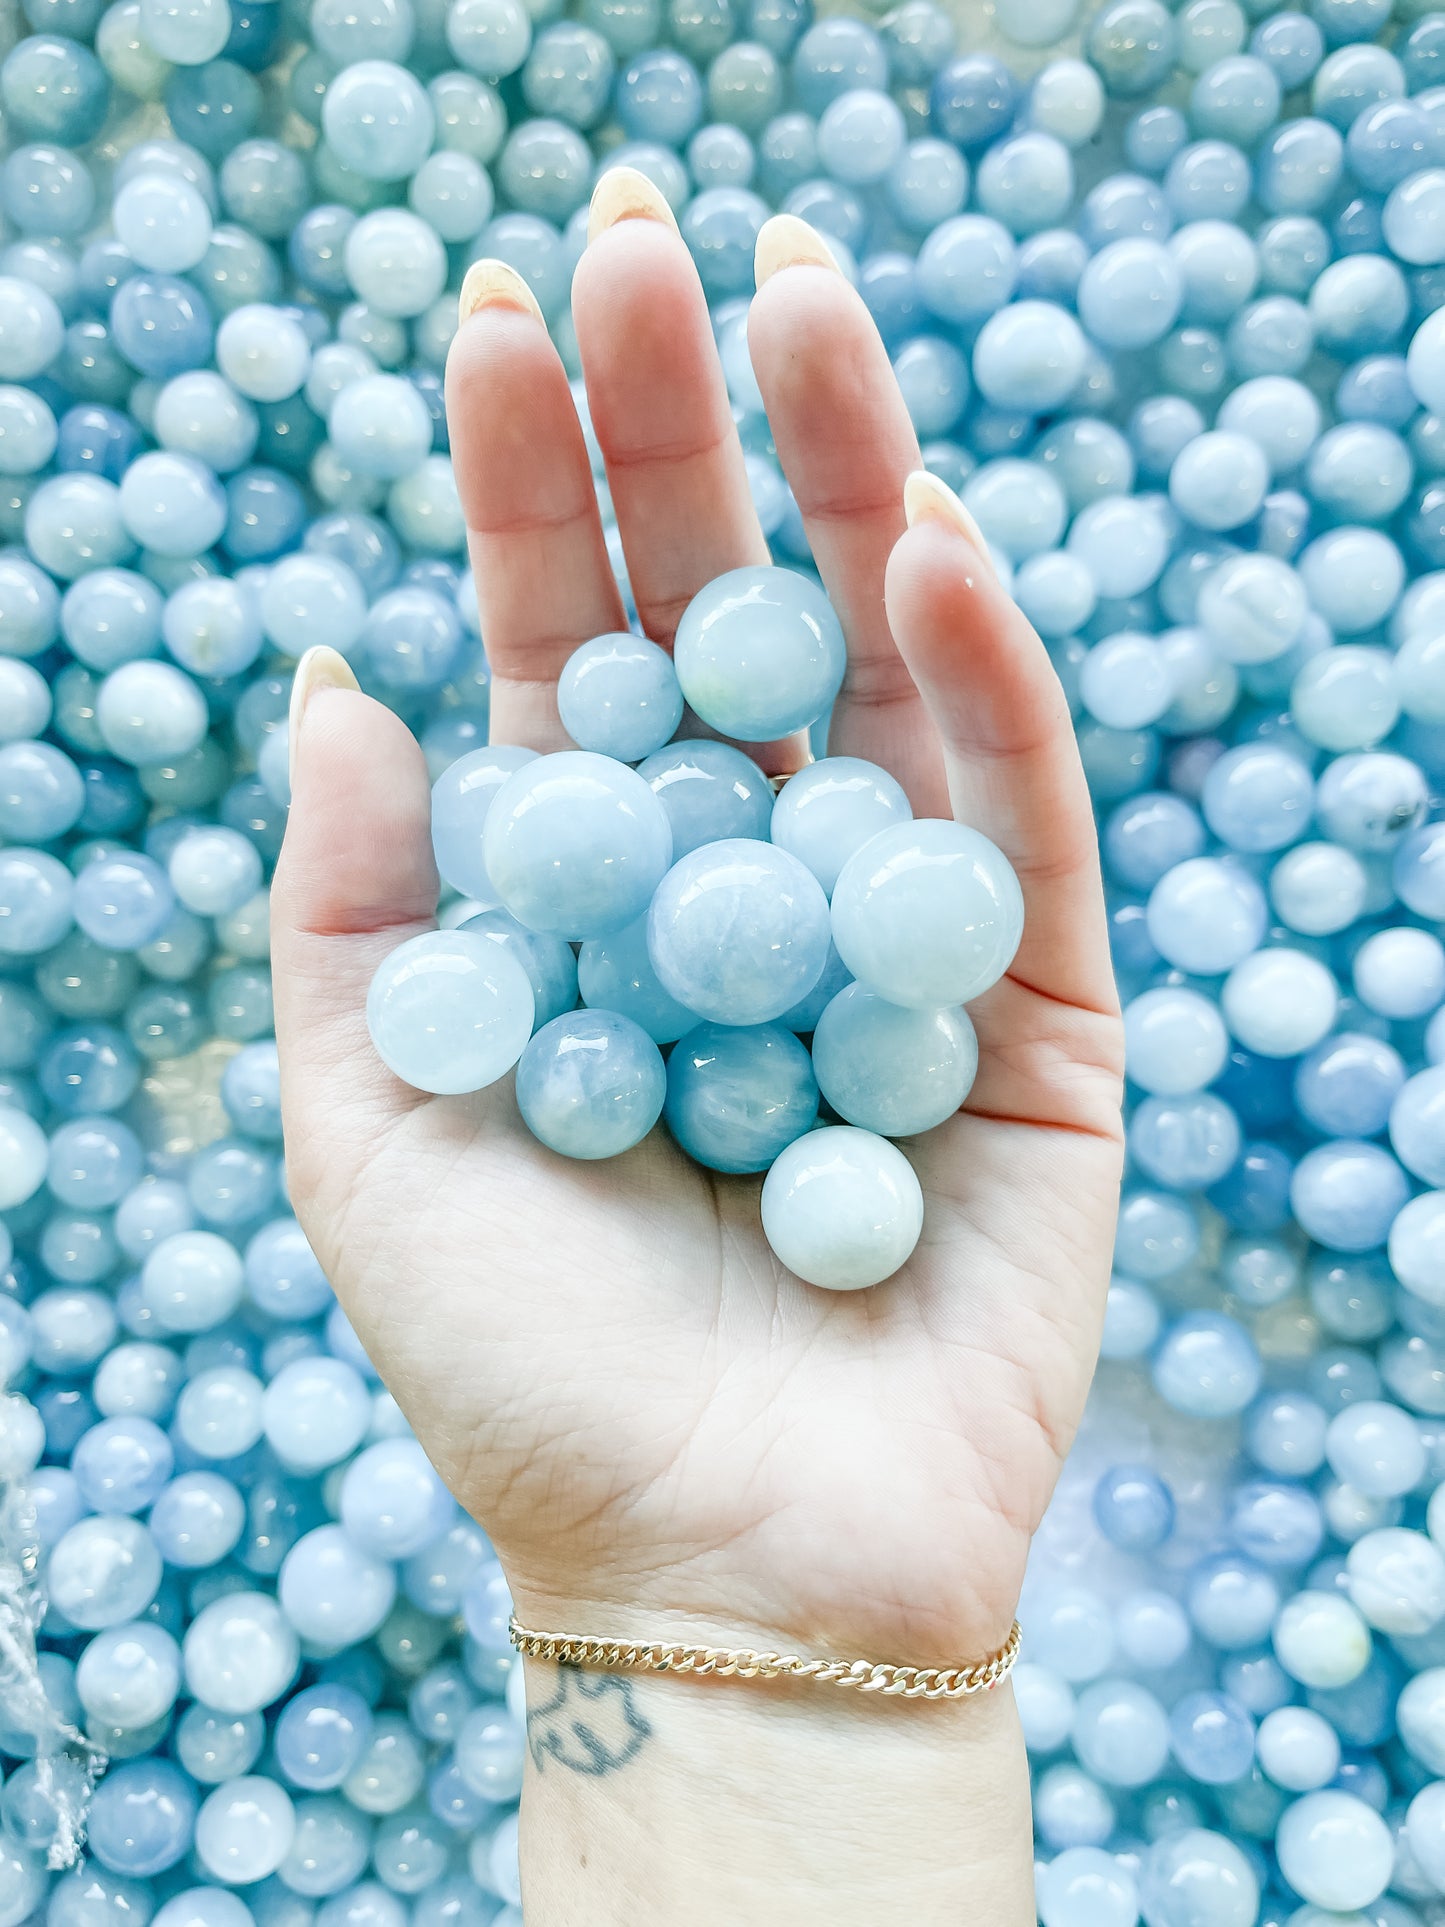 Aquamarine marbles